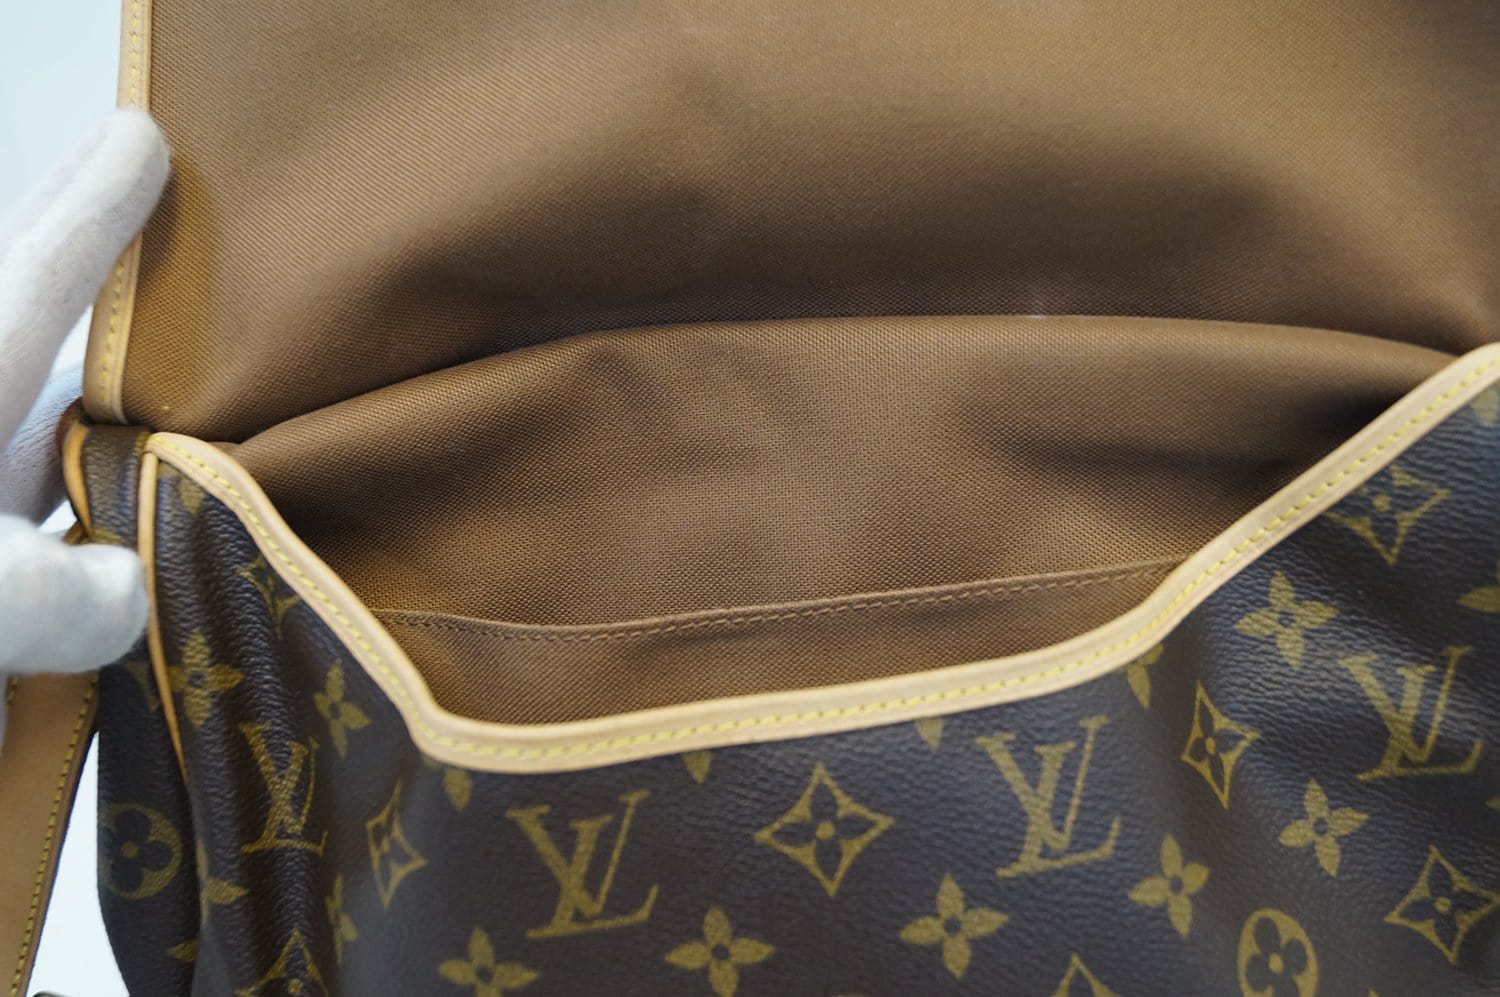 Louis Vuitton Saumur Shoulder bag 397070